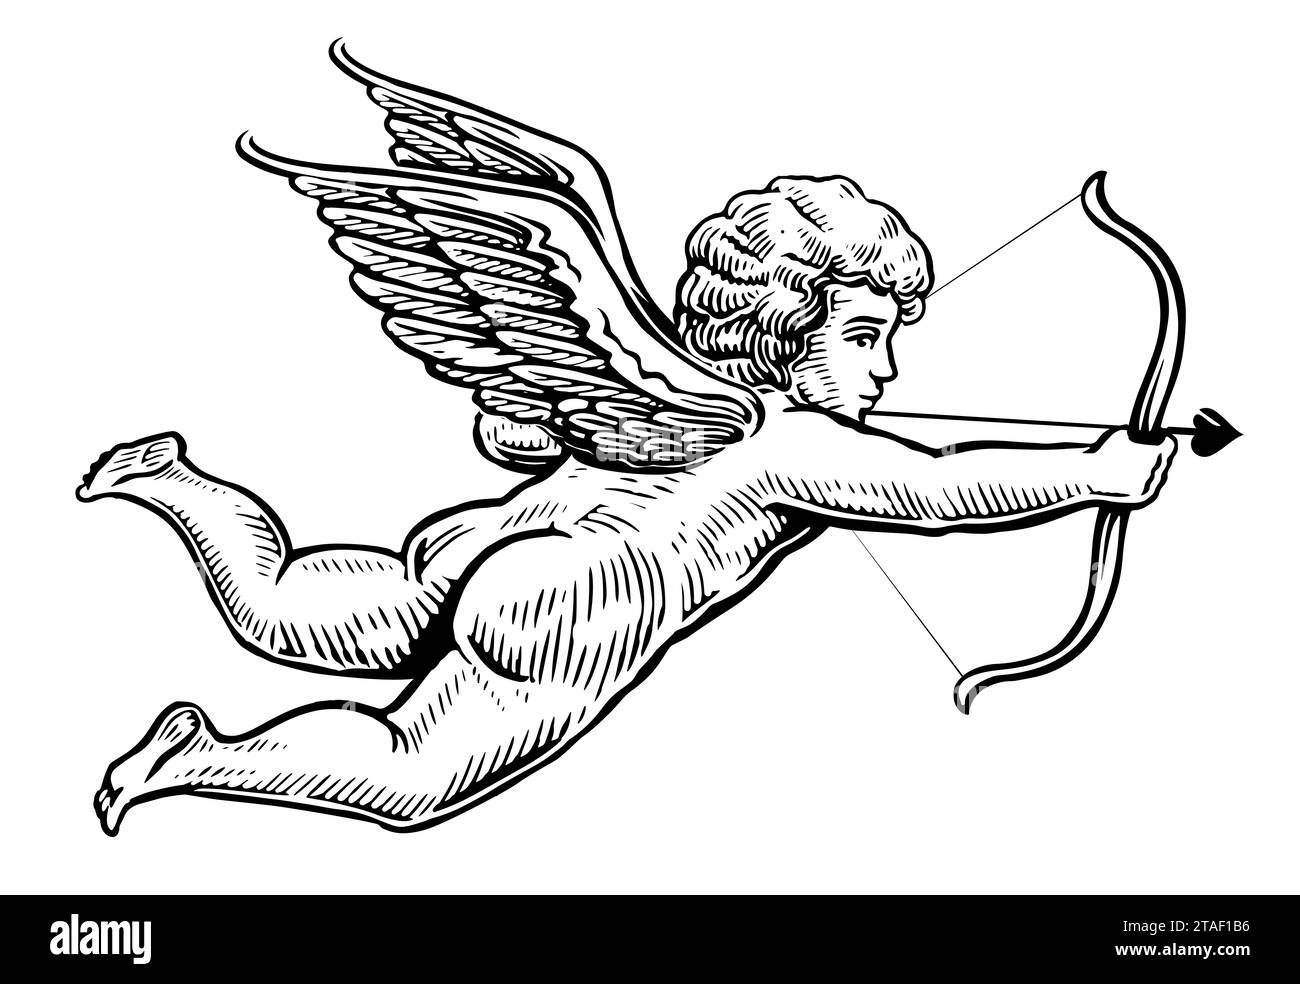 Disegno astratto di ali di uccello o di angelo isolato su bianco.  Illustrazione di doodle Foto stock - Alamy